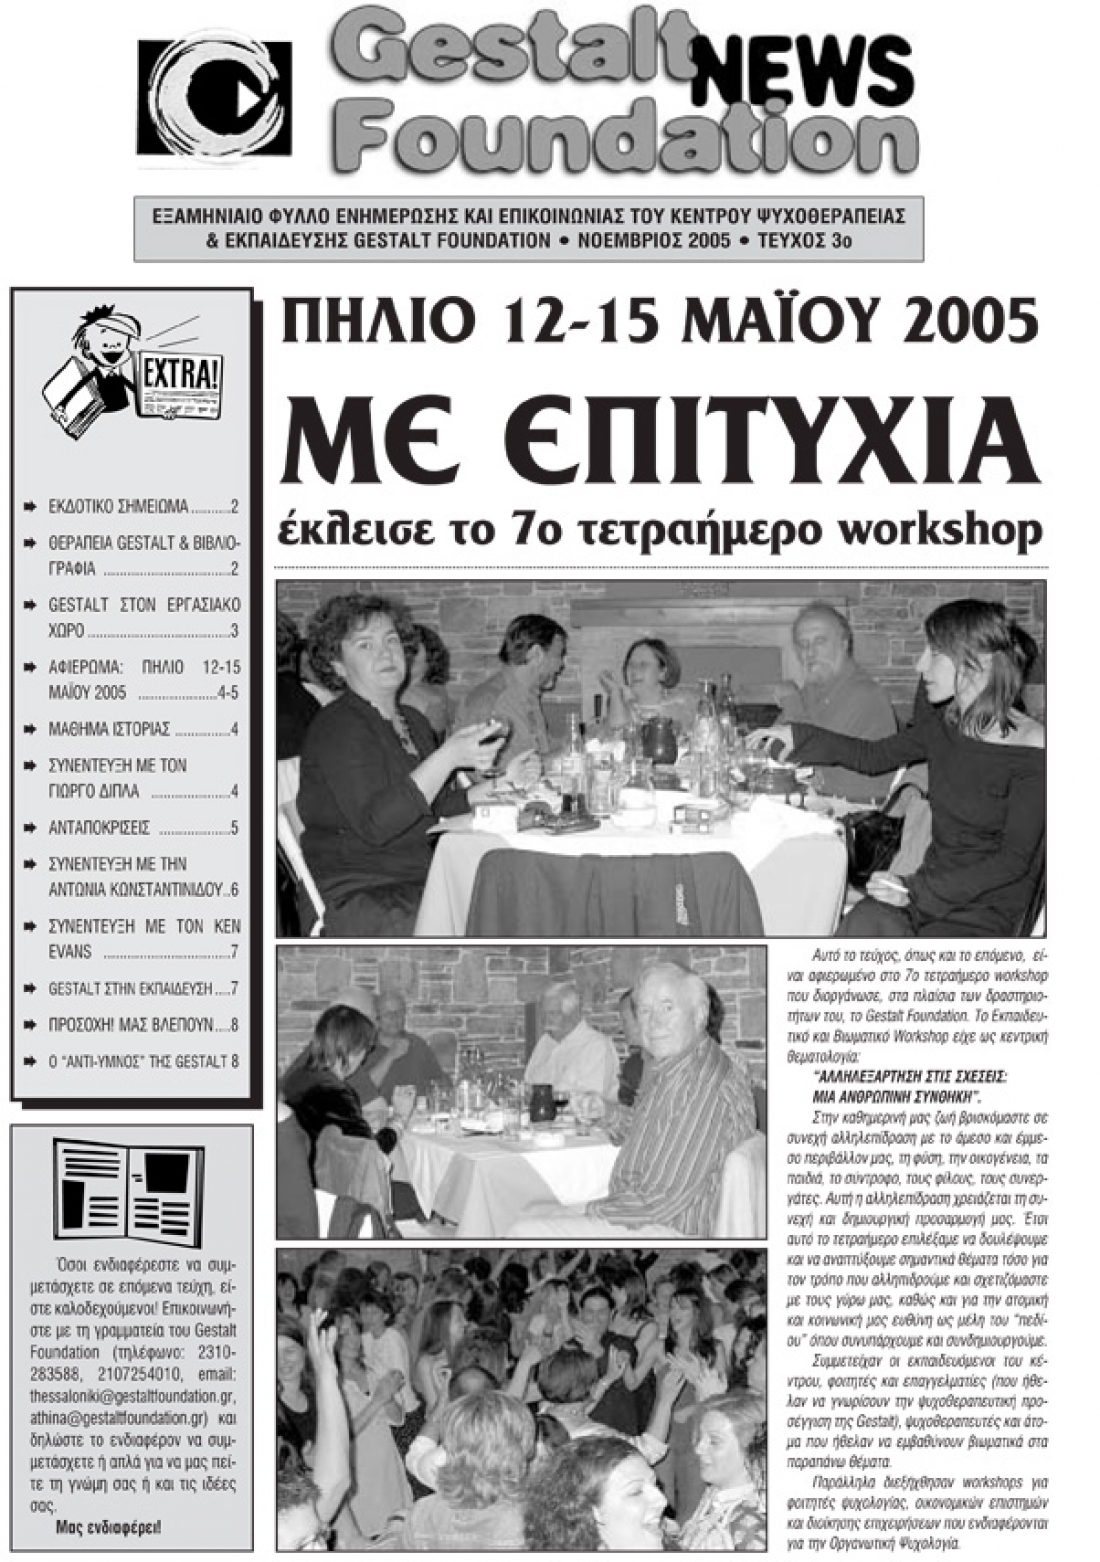 Νοέμβριος 2005 - Τεύχος 3